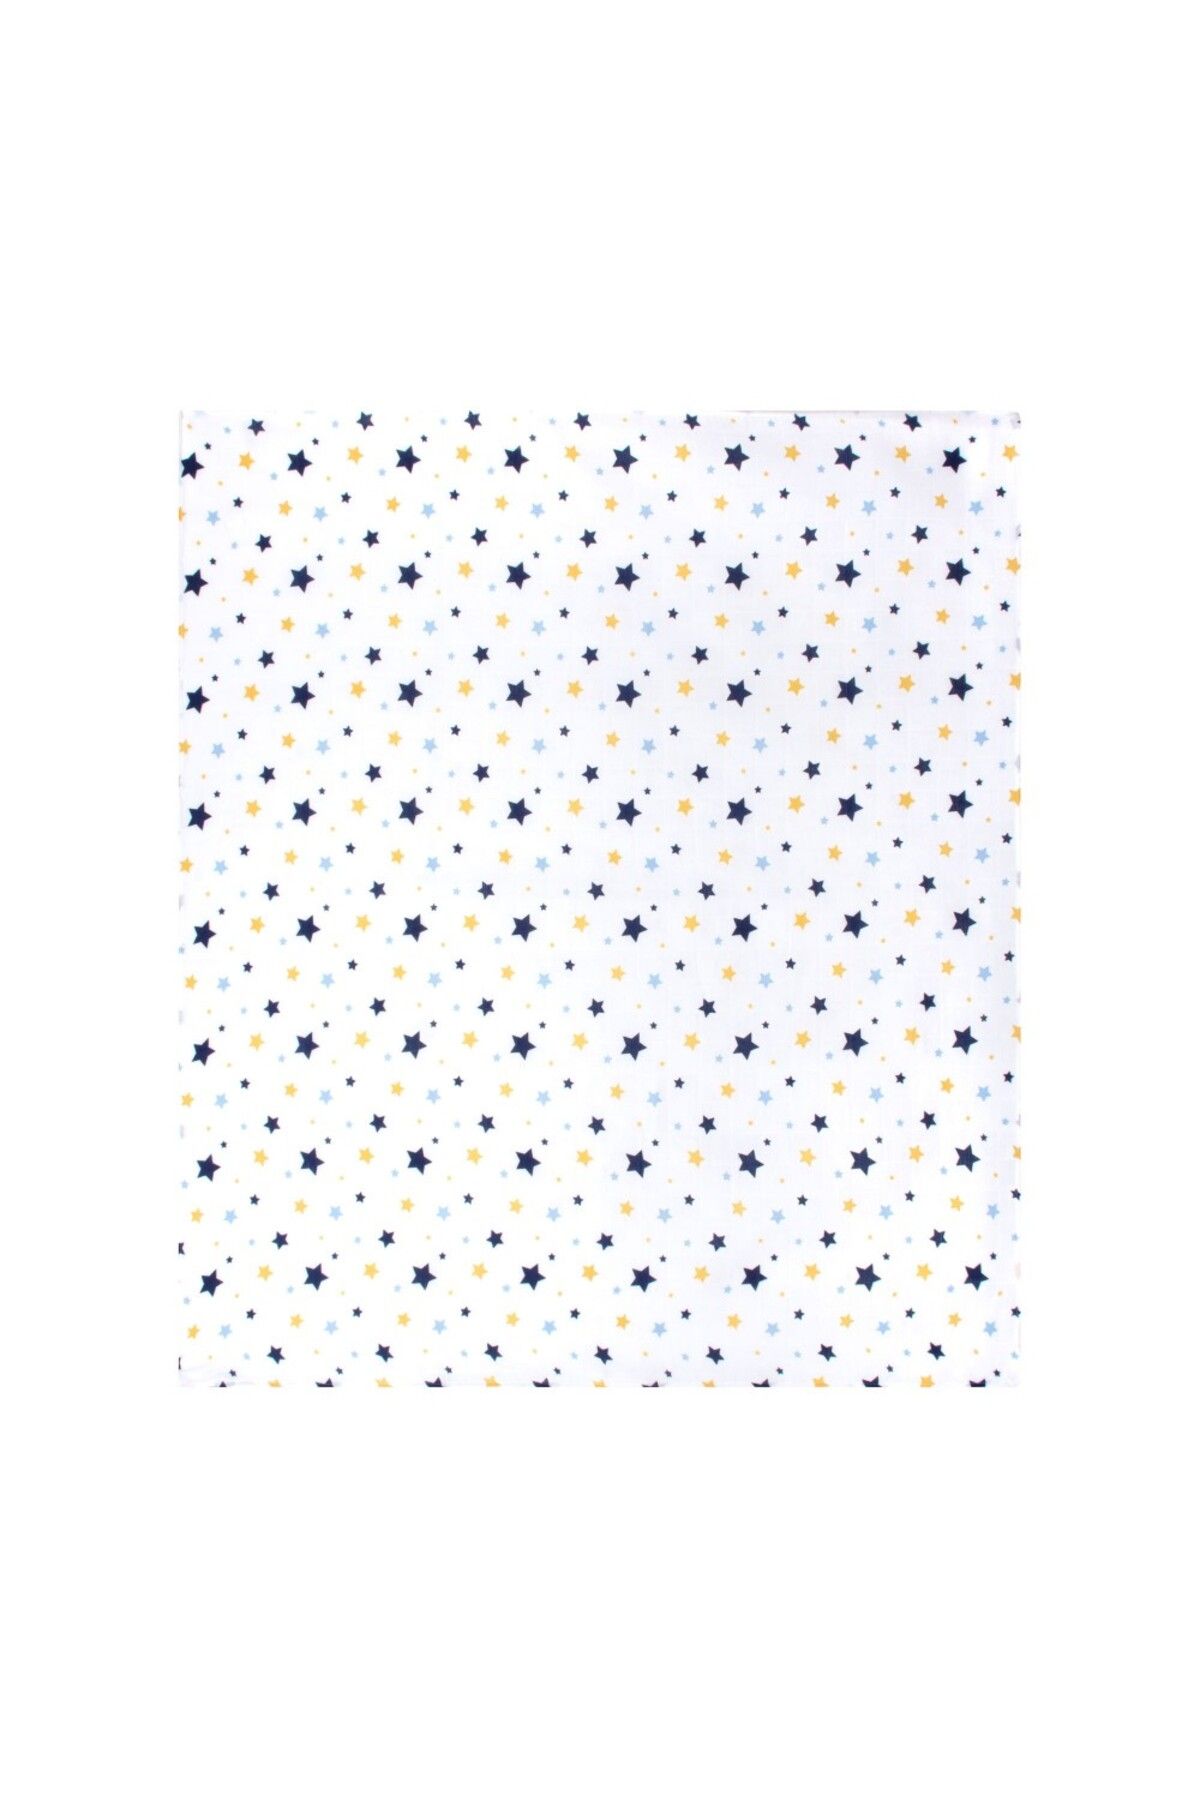 Sevi Bebe Desenli Müslin Bebe Battaniye 120x100 Art-319 Yıldız Yağmuru Mavi